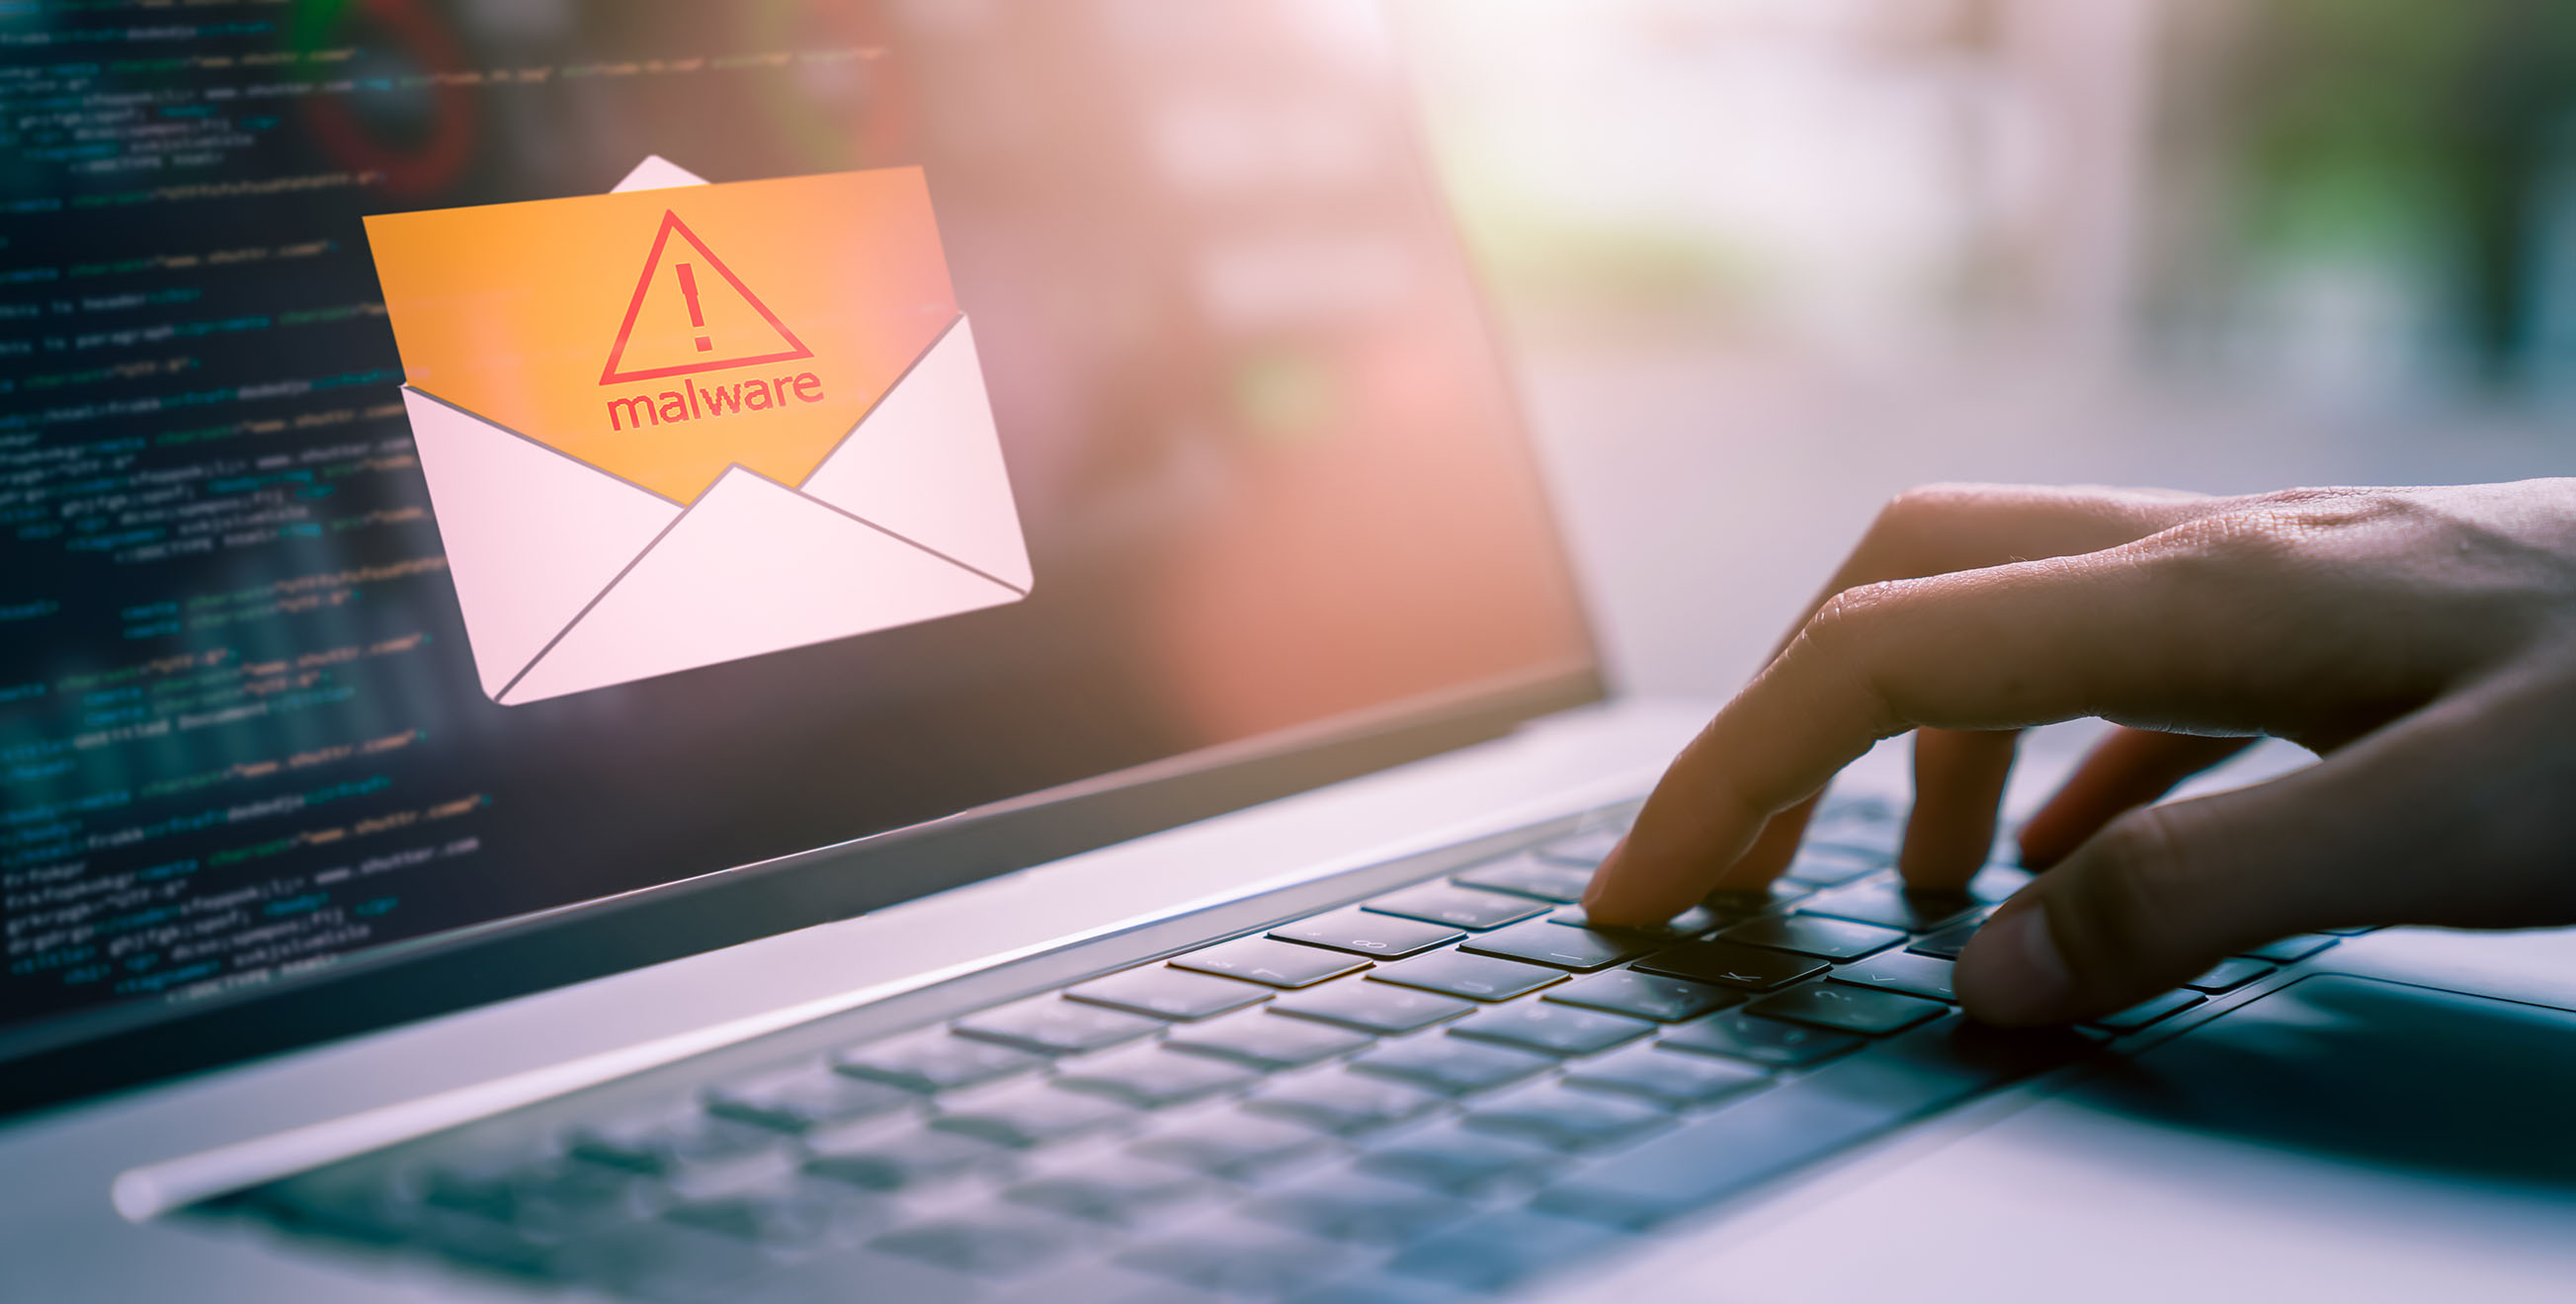 boite mail piratée avec un mail contenant un malware